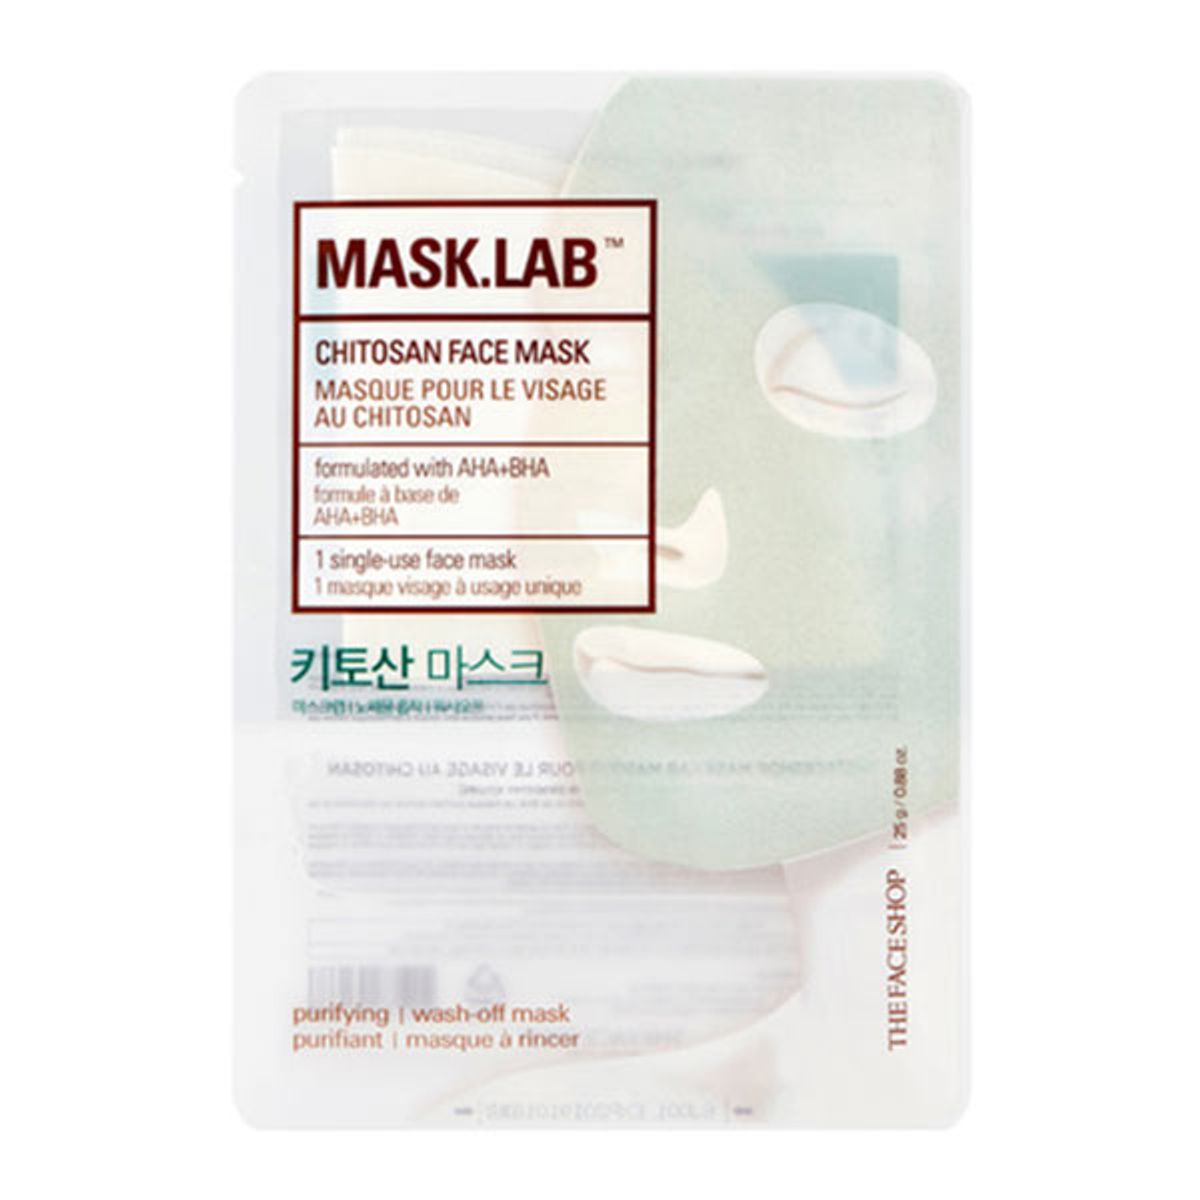 mat-na-giay-mask-lab-chitosan-face-mask-1